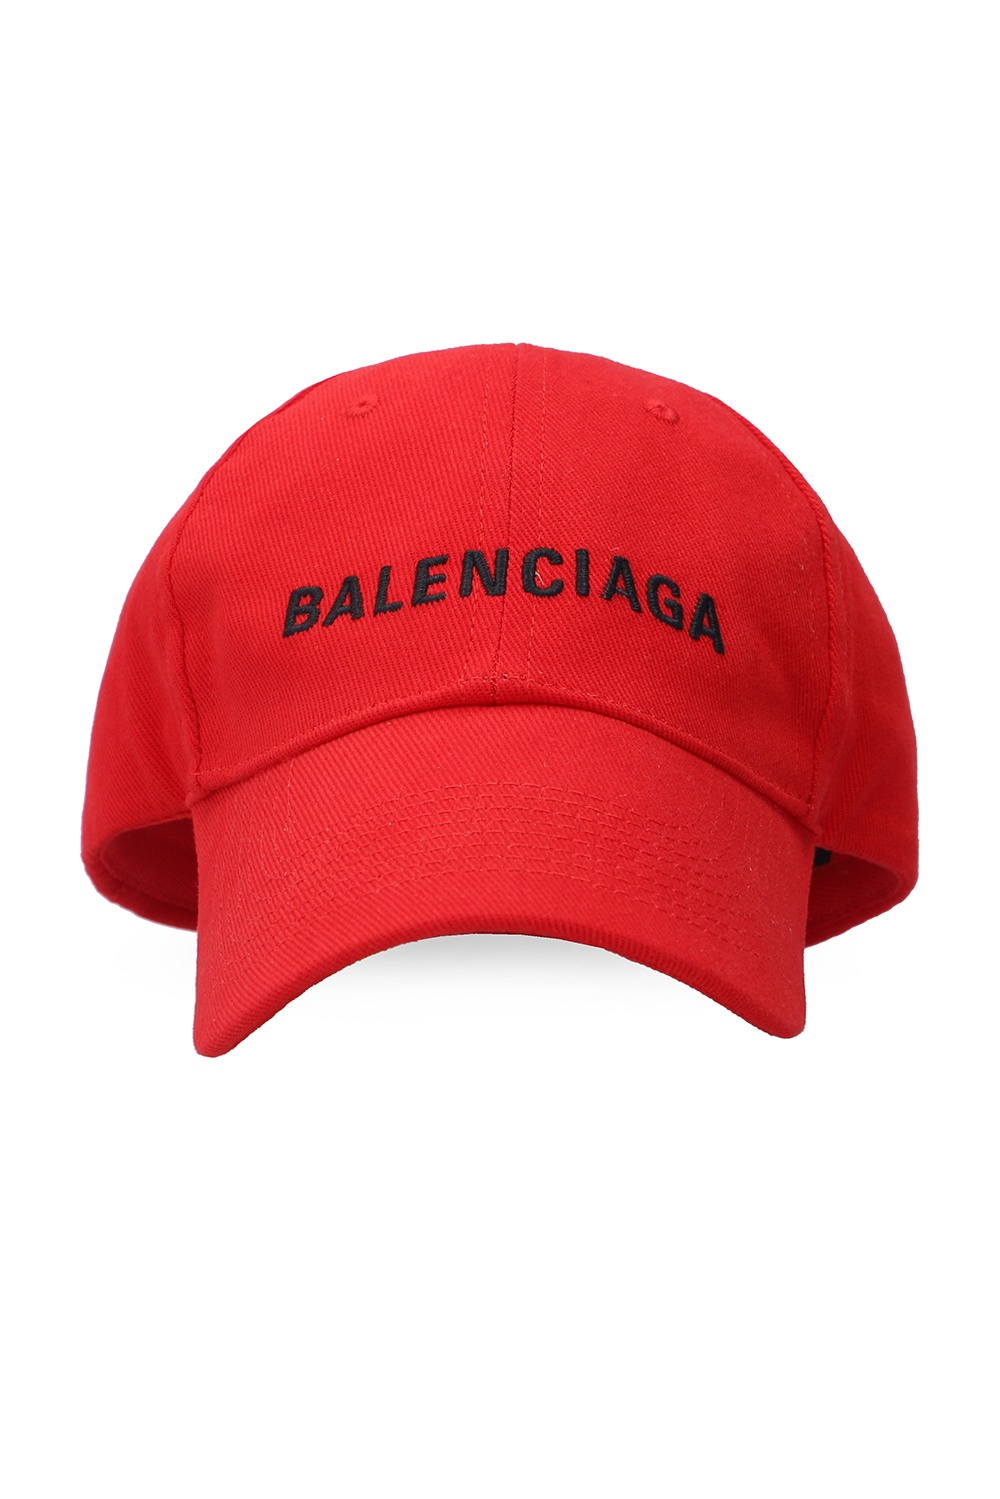 Balenciaga Branded baseball cap